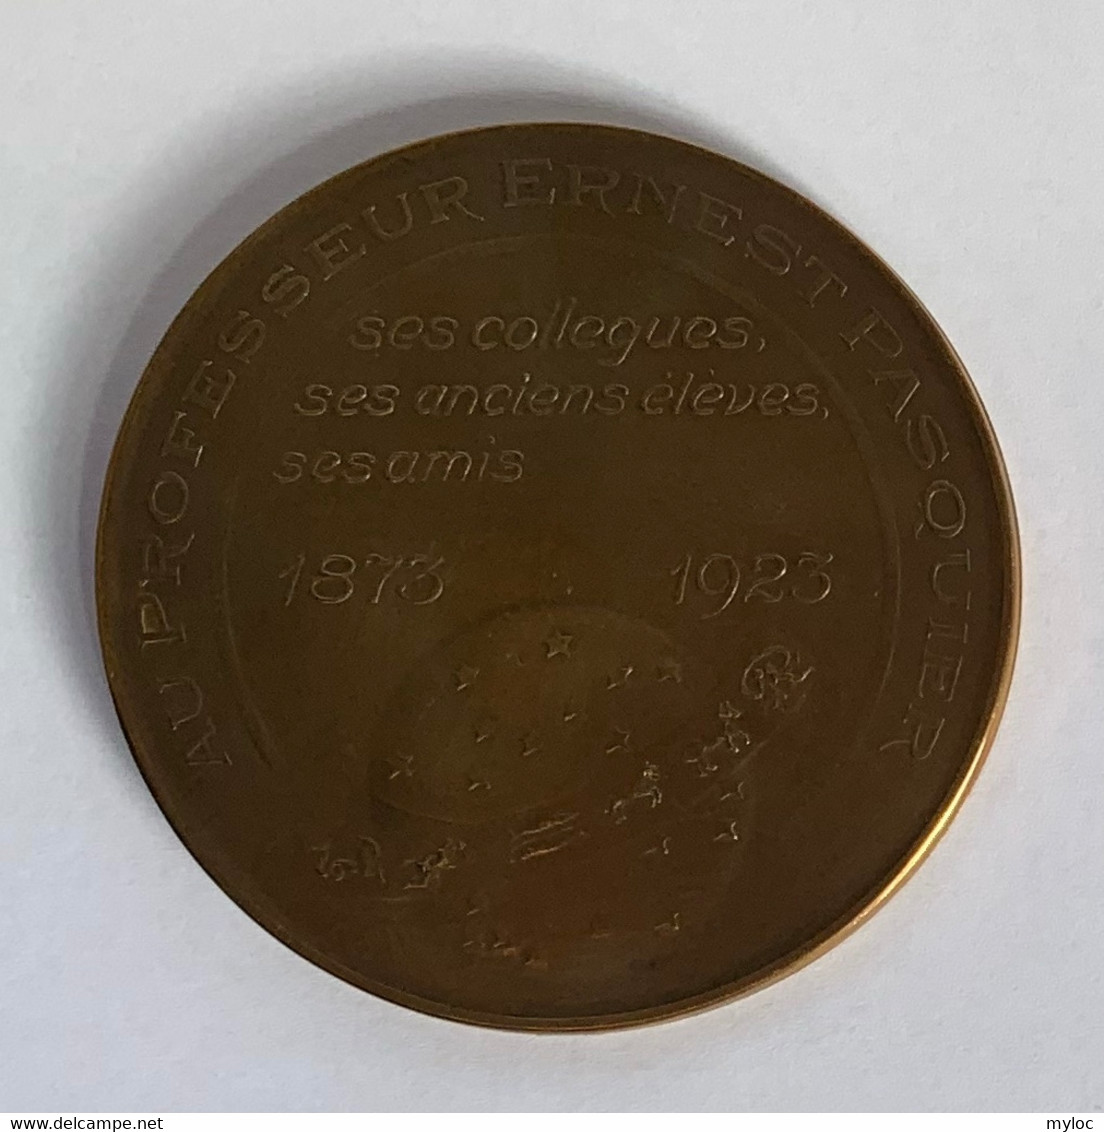 Médaille Bronze. Au Professeur Ernest Pasquier. Ses Collègues, Ses Anciens élèves, Ses Amis. 1873-1923. A. Mauquoy - Professionals / Firms